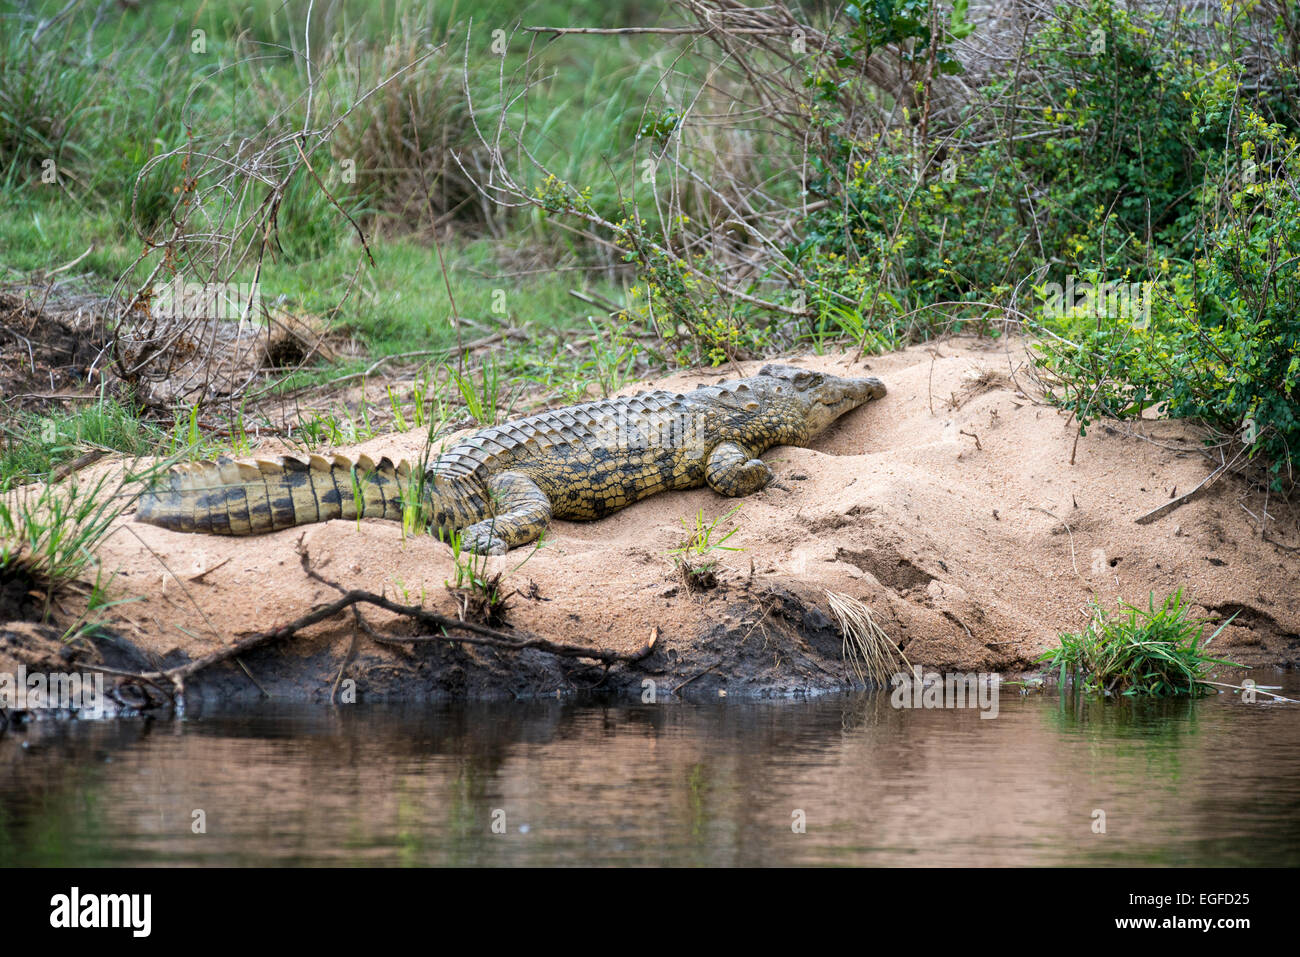 El cocodrilo del Nilo (Crocodylus niloticus) apoyada sobre un arenal, el Parque Nacional Kruger, Sudáfrica Foto de stock